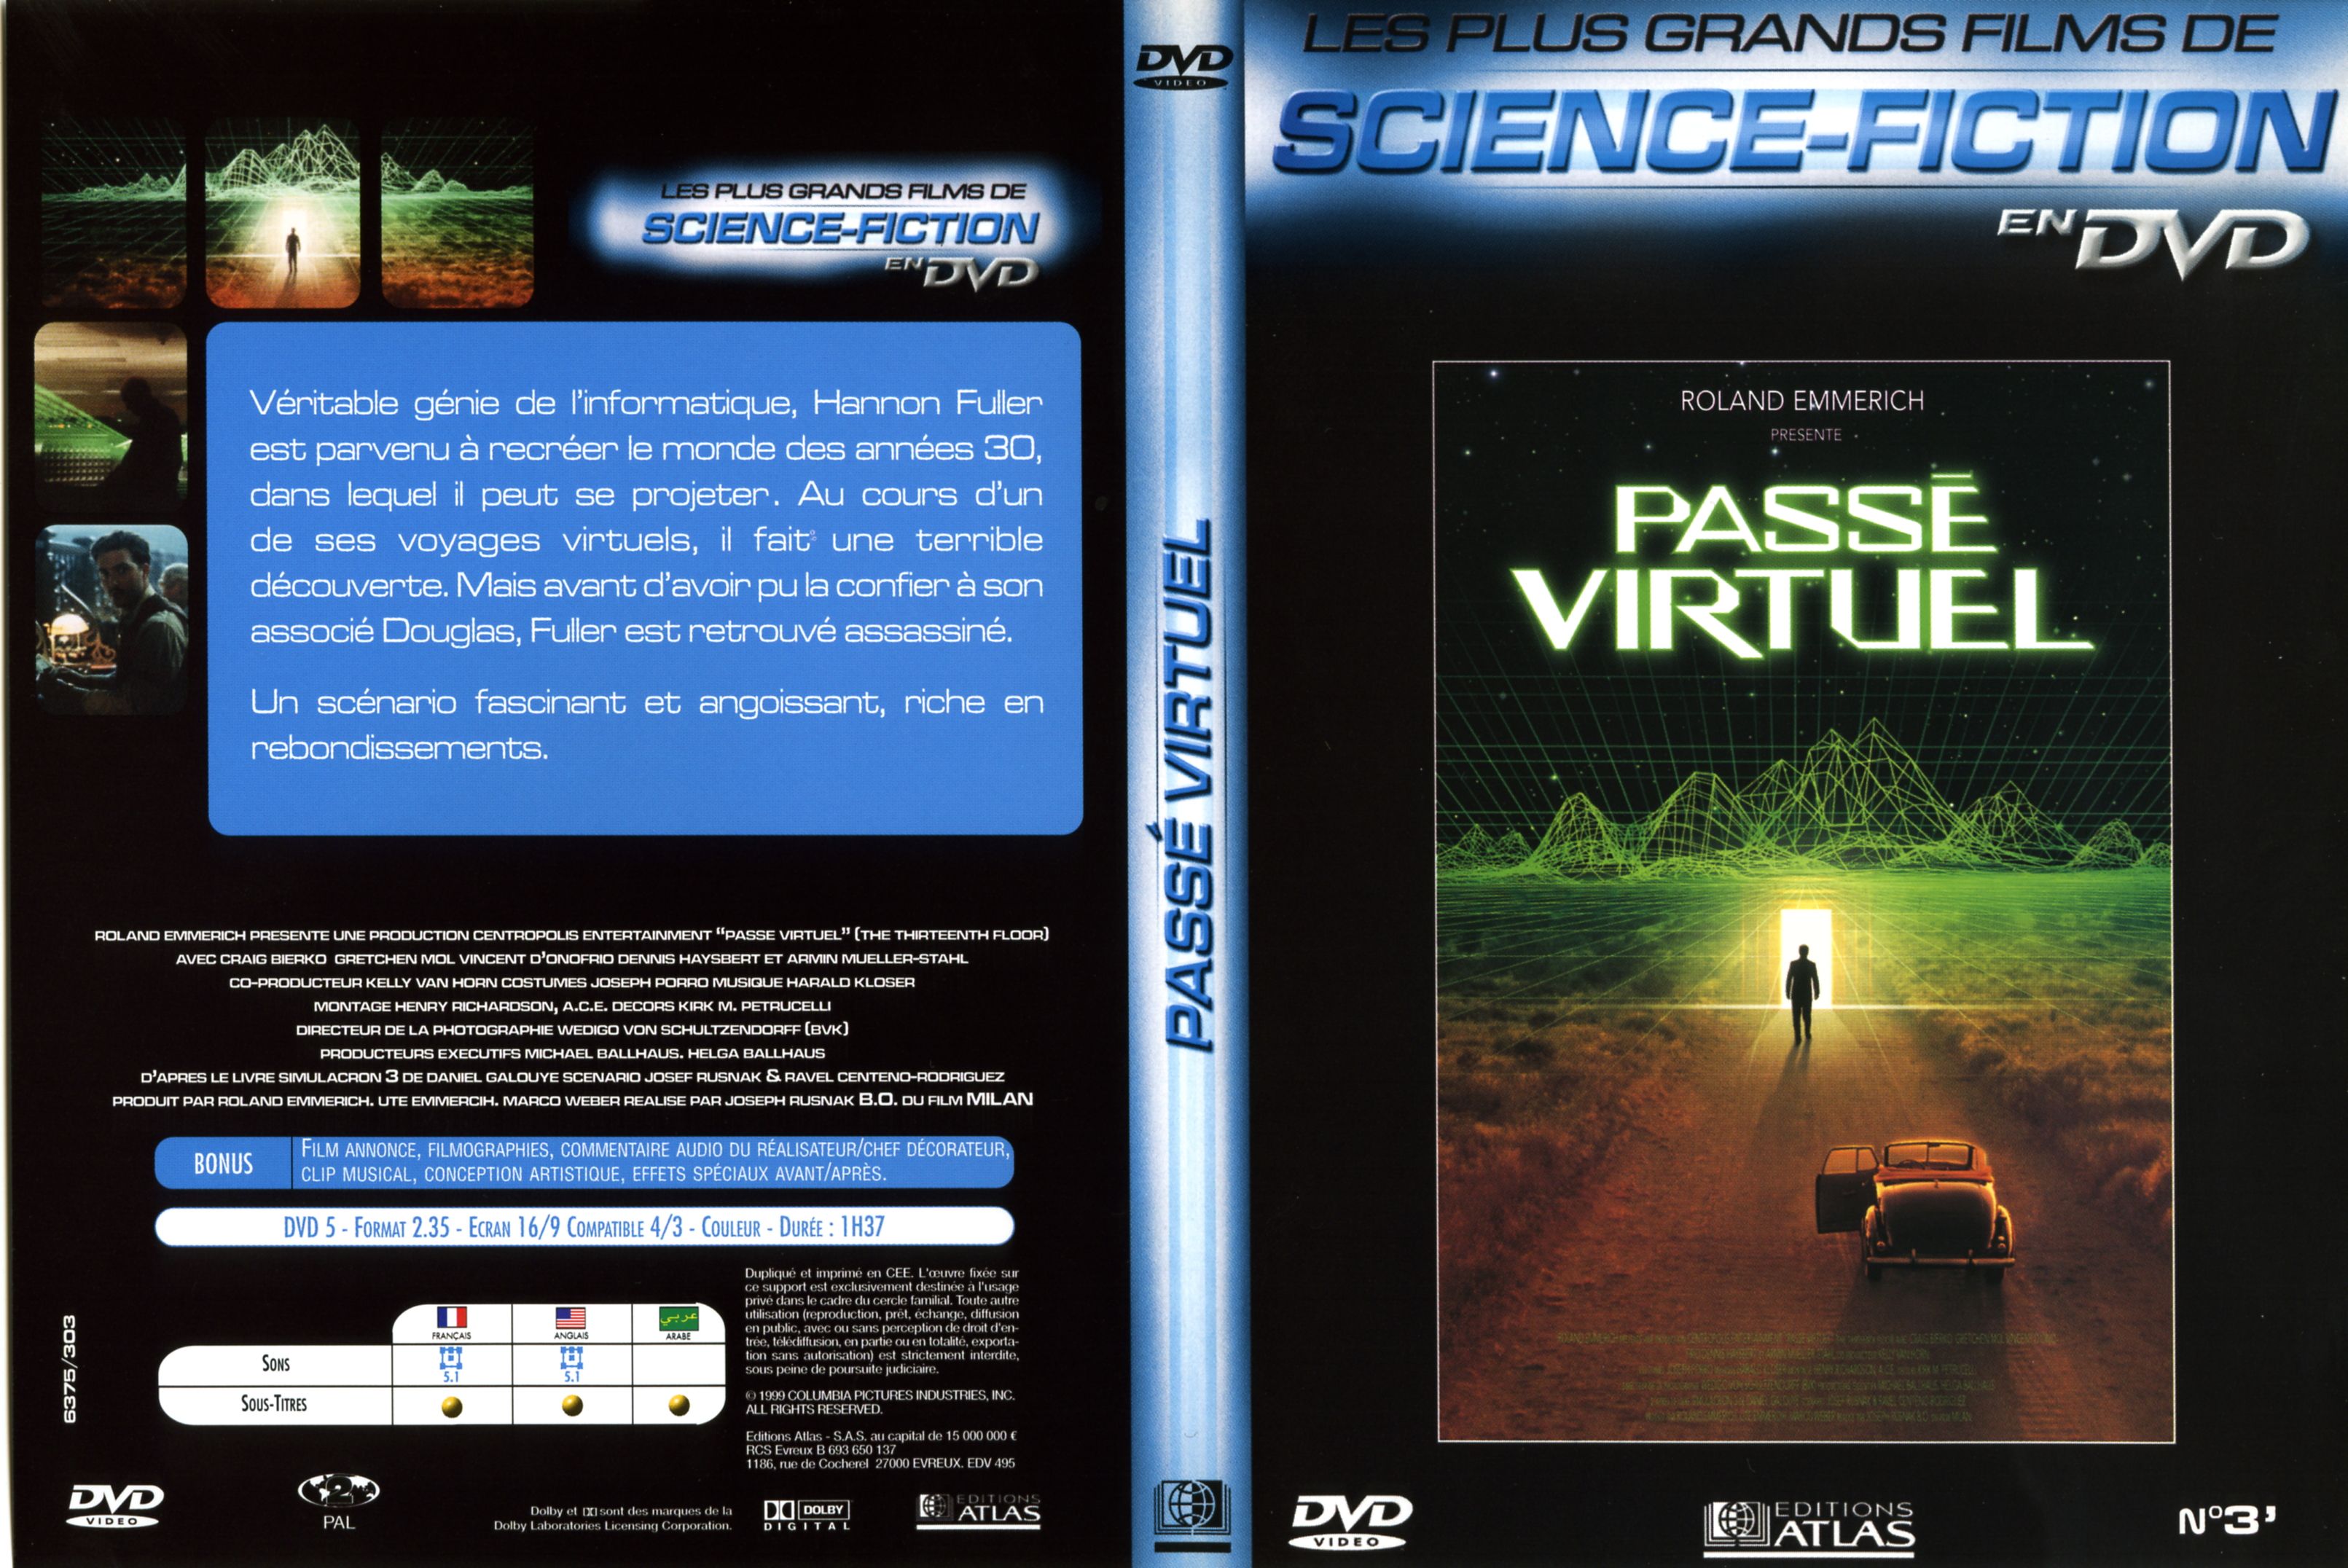 Jaquette DVD Pass virtuel v2